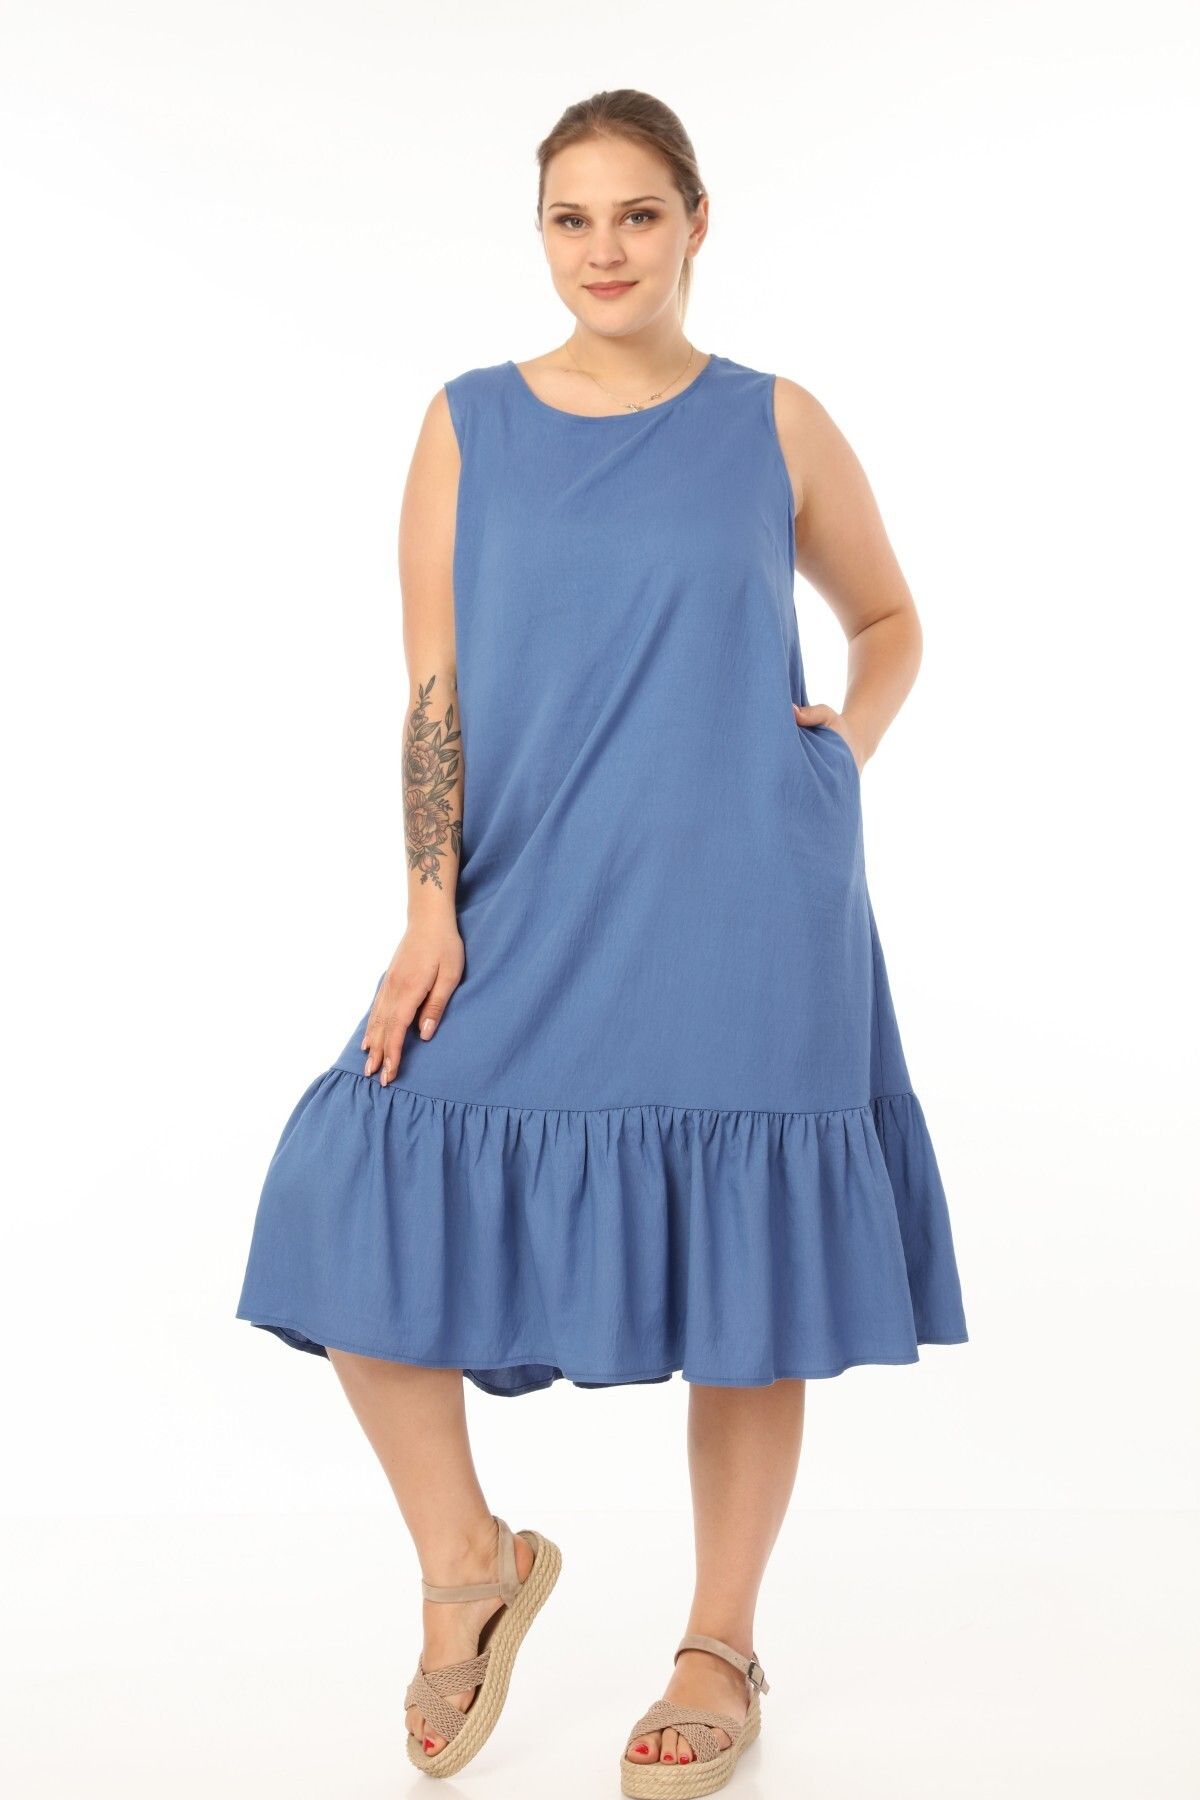 Genel Markalar Vip Schık Kadın Büyük Beden Kolsuz Elbise Indigo Sckwm21el01